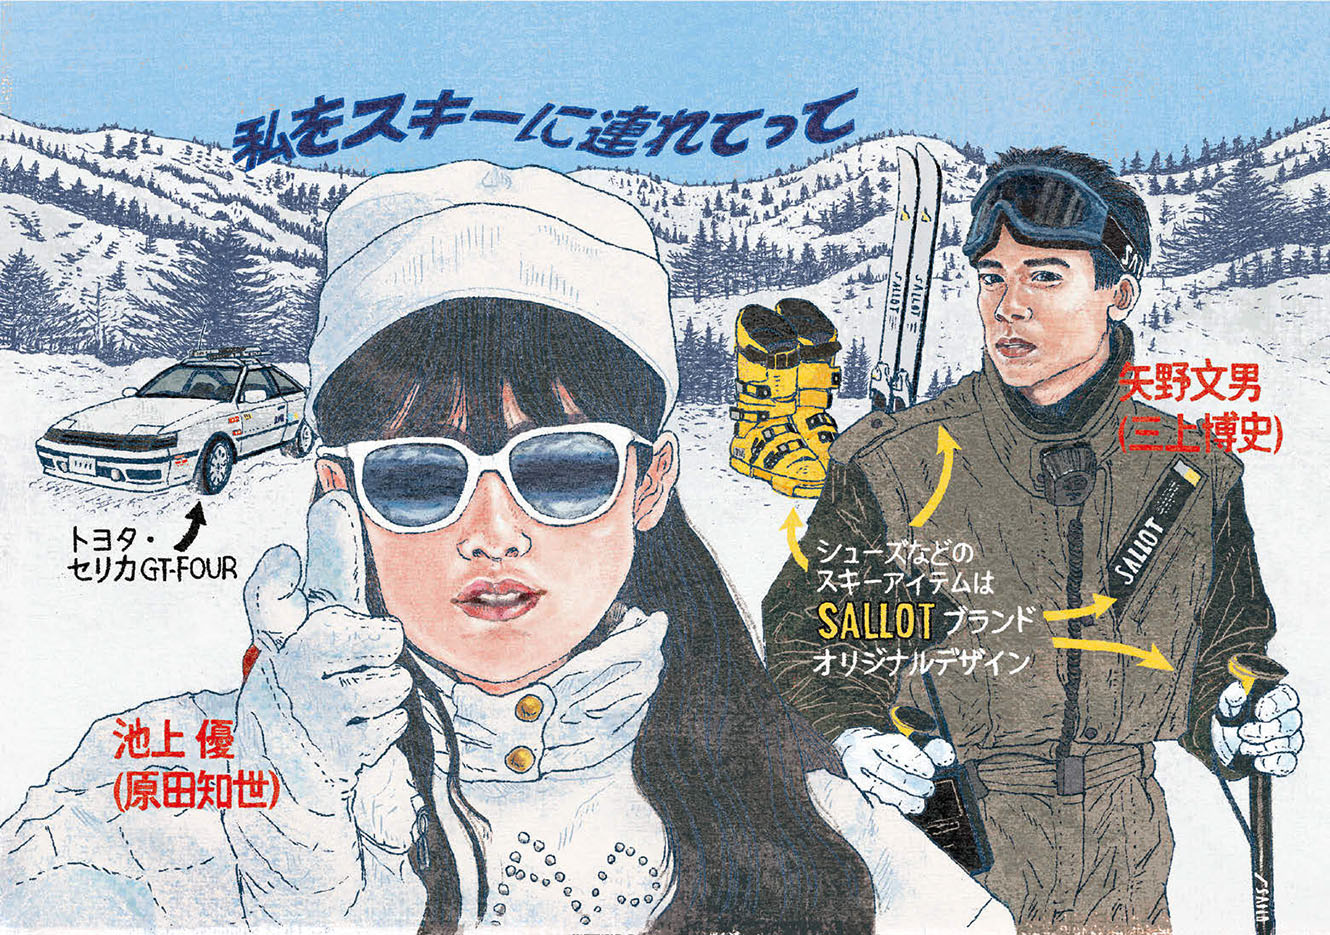 連れ っ 私 を て て スキー に 映画『私をスキーに連れてって』 NHK